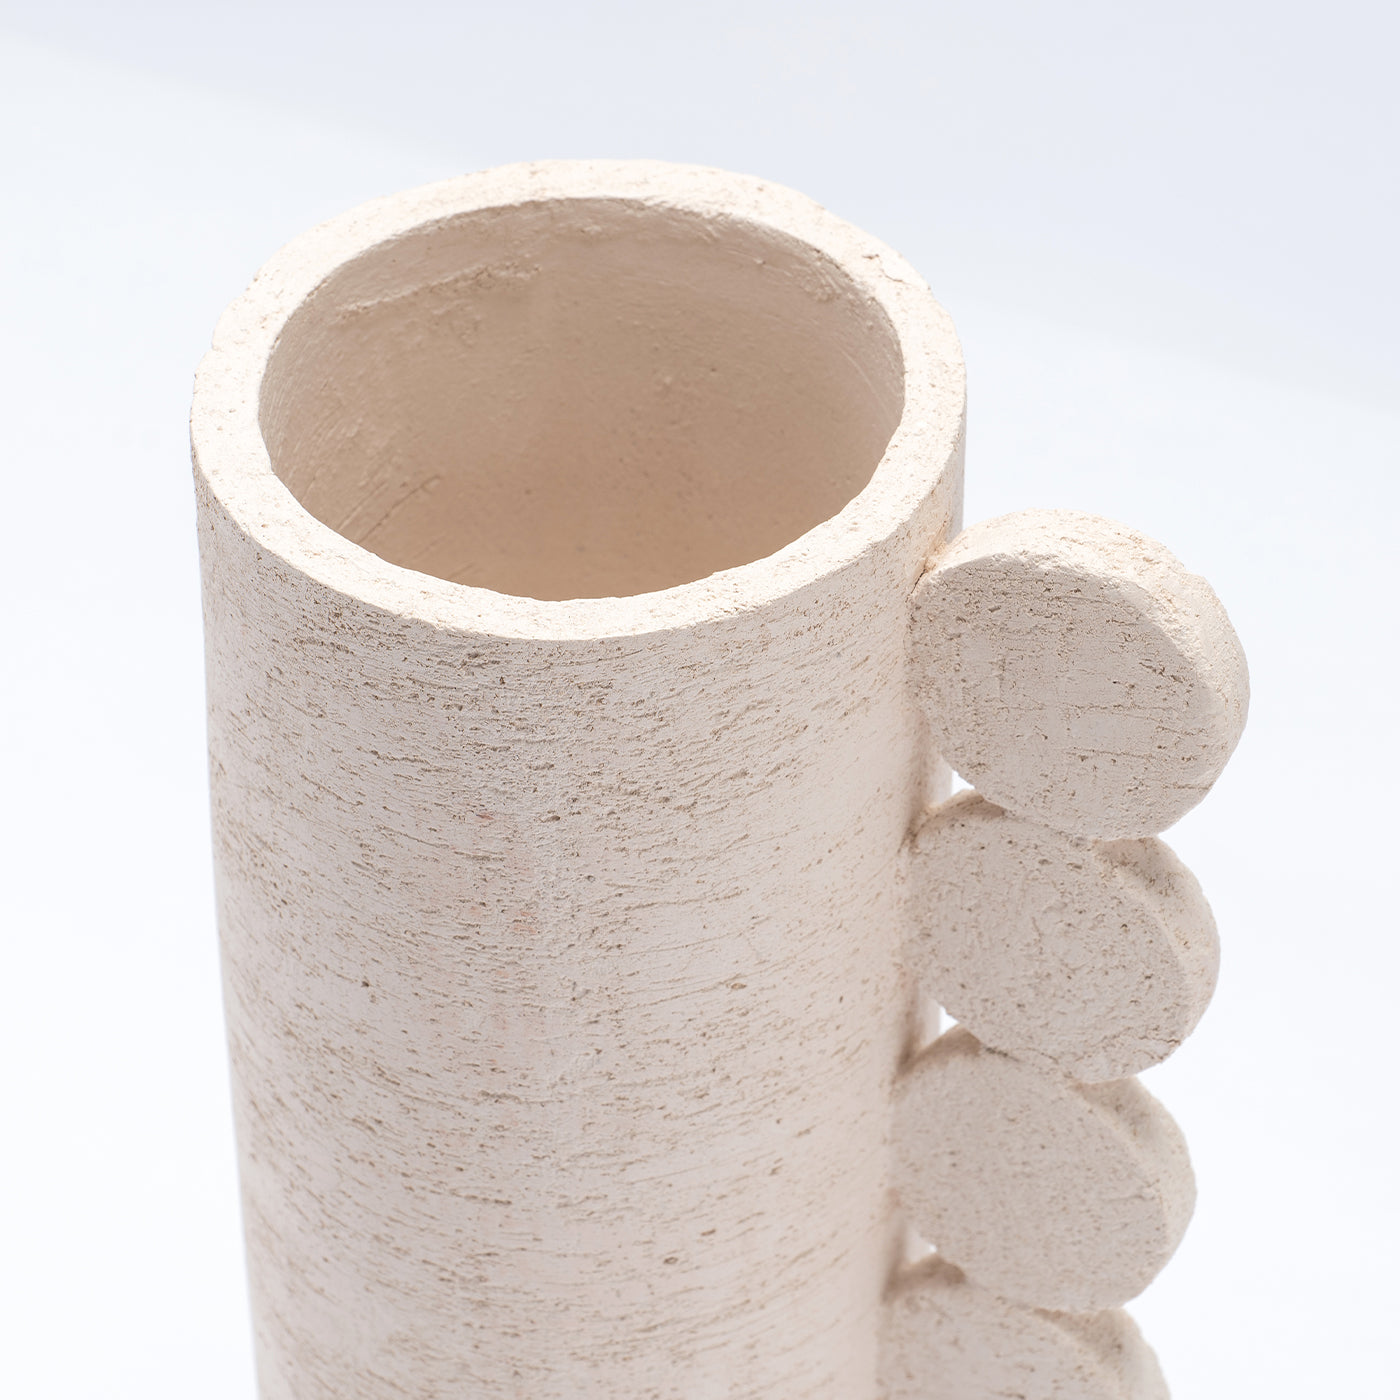 Australe Bibi White Vase - Alternative view 1